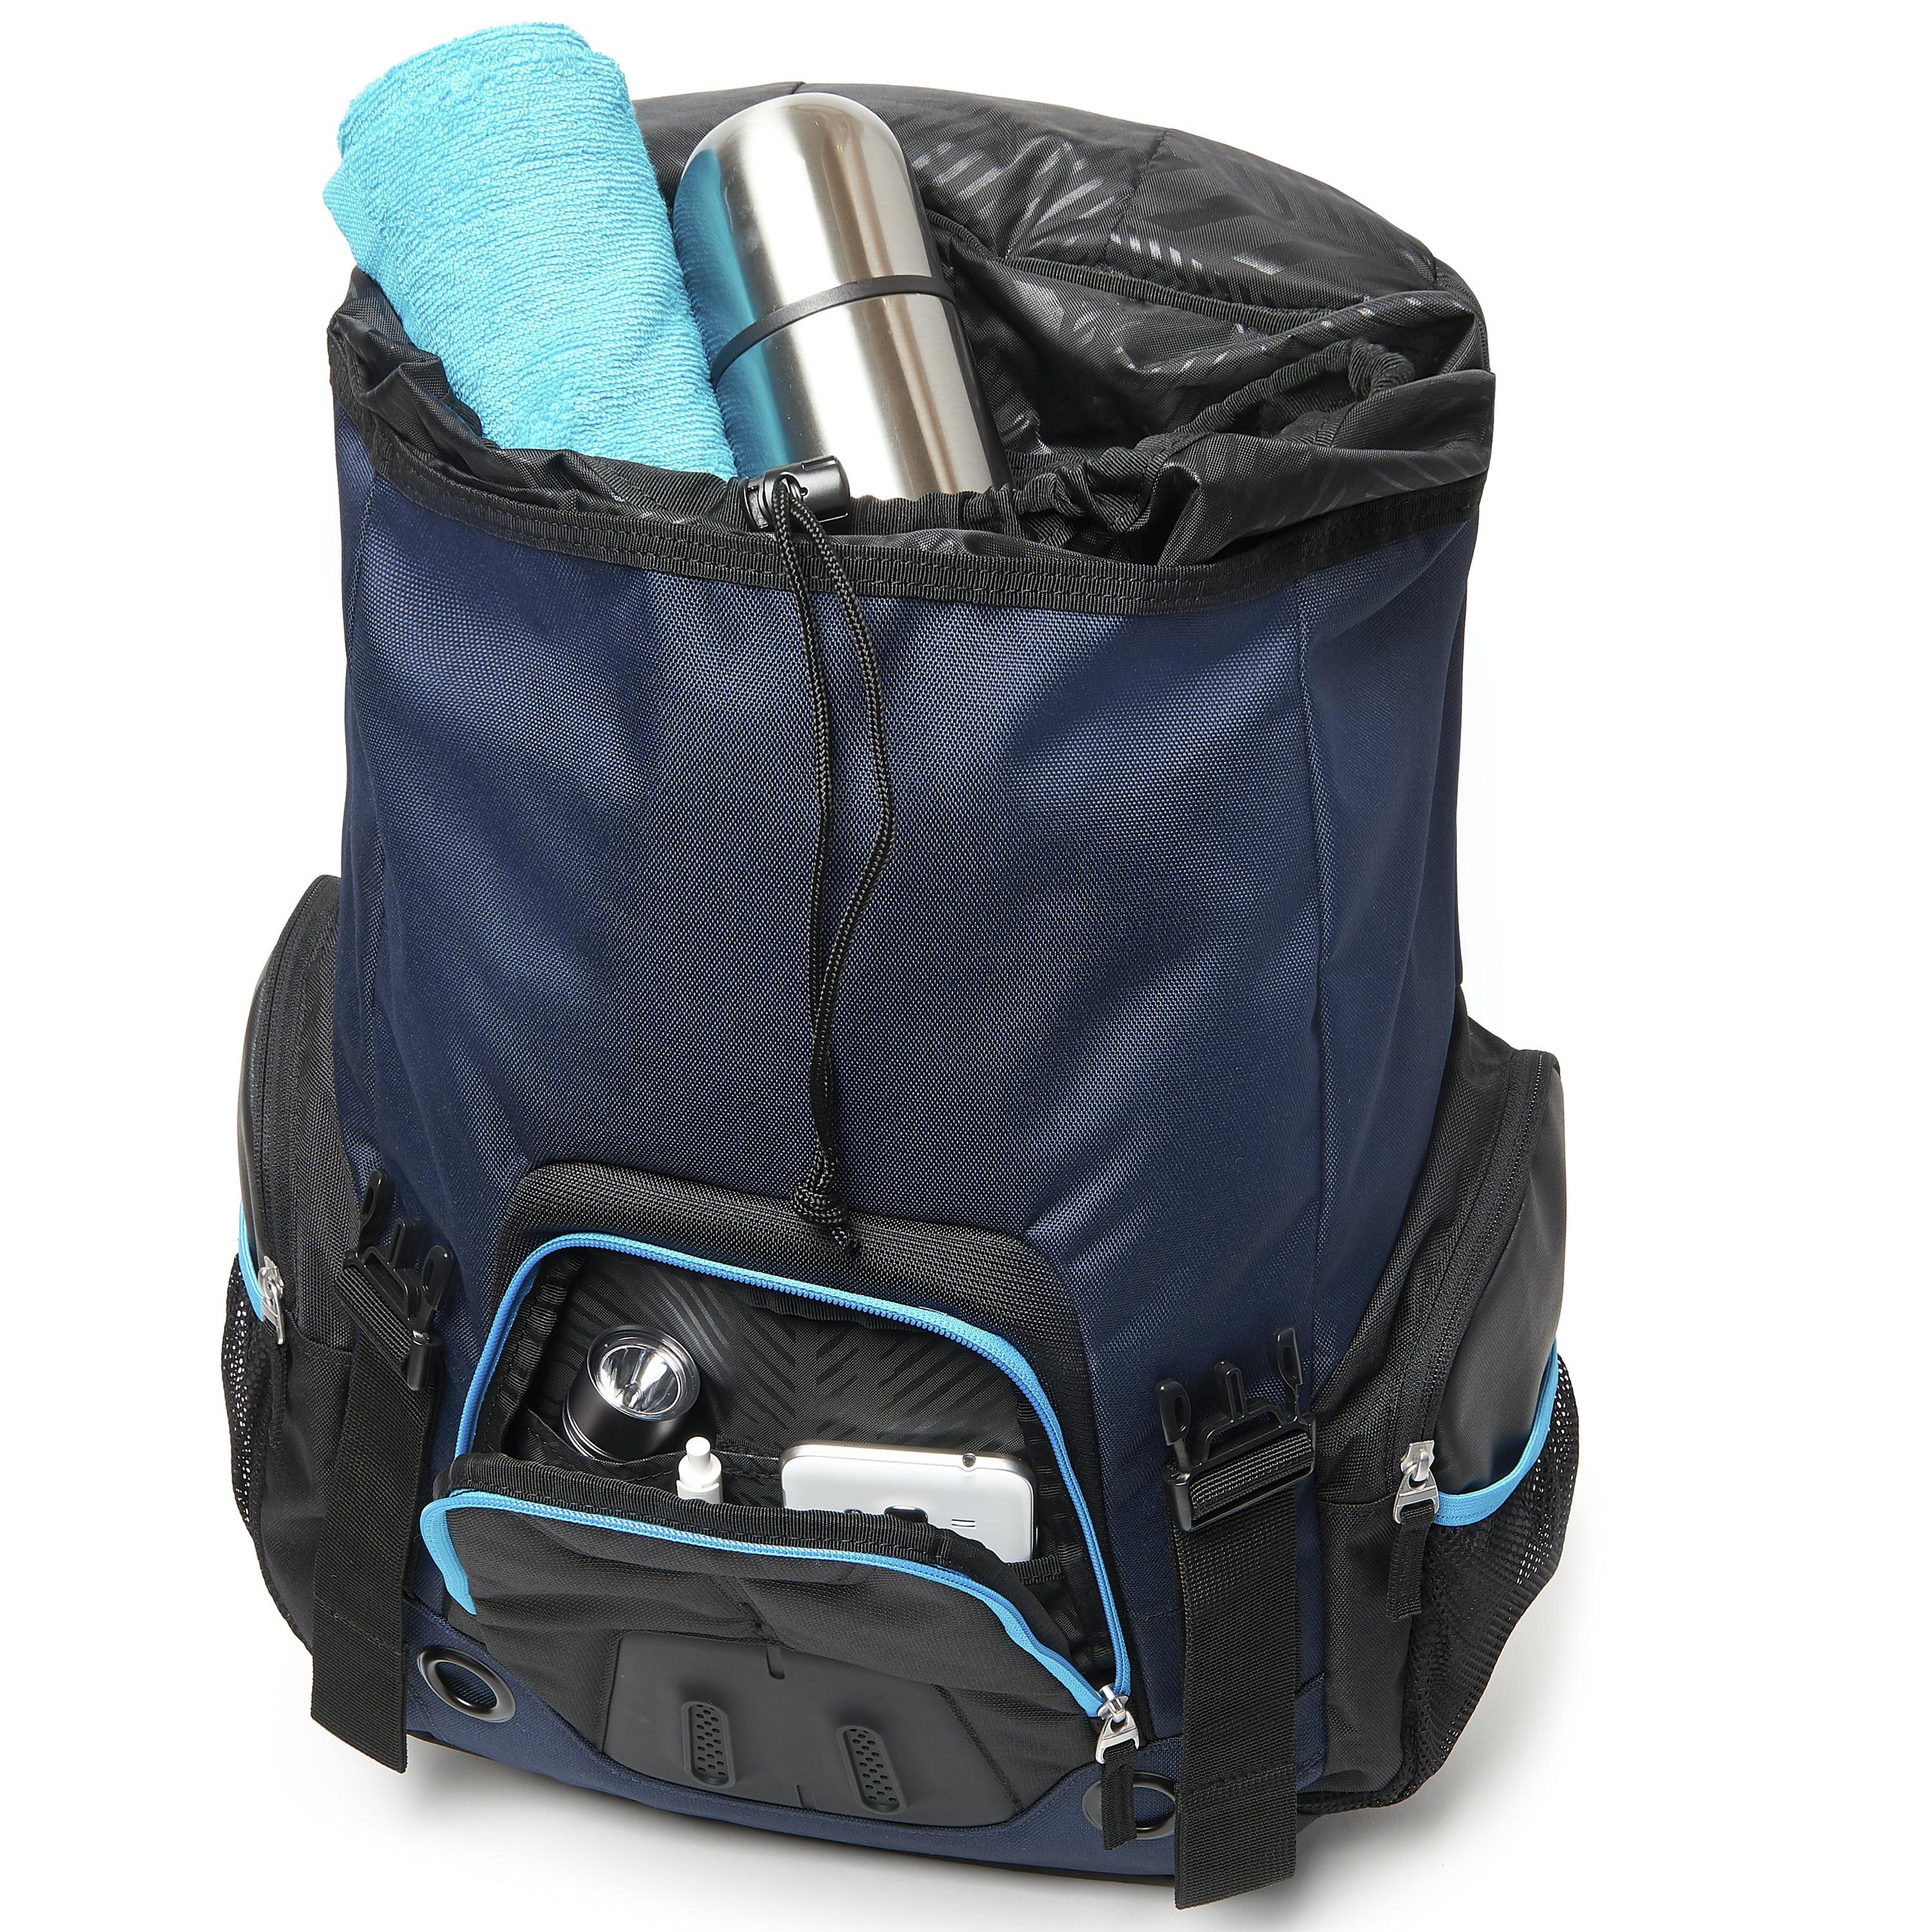 oakley backpack gearbox lx